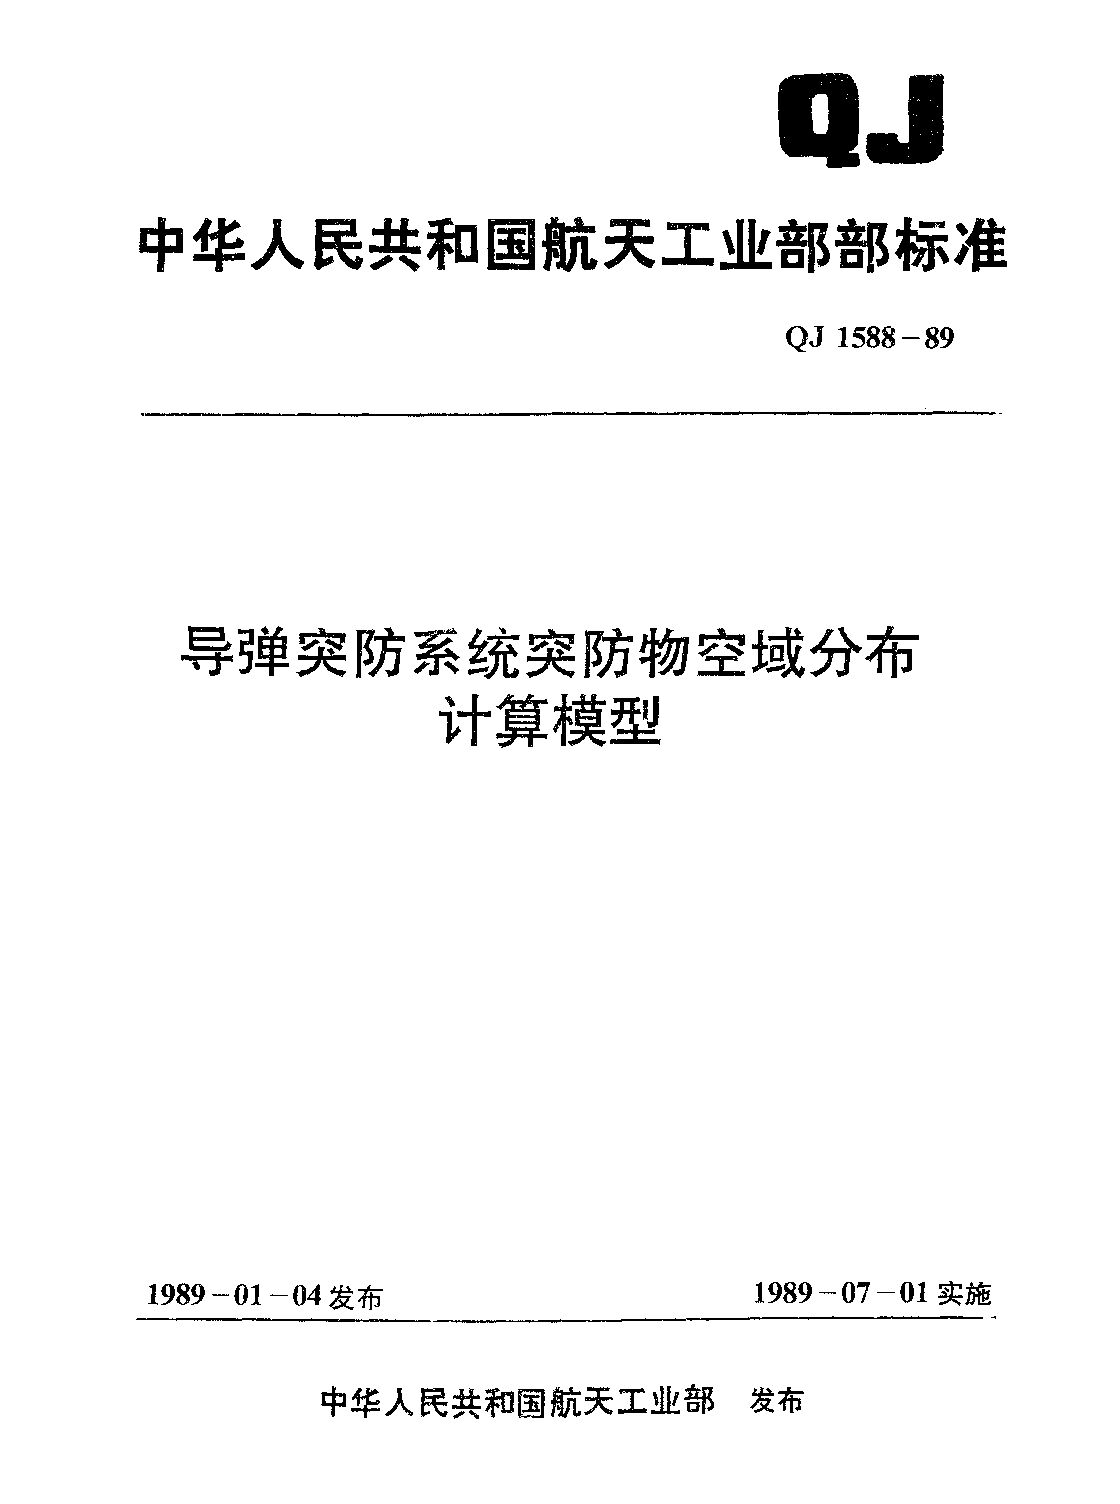 QJ 1588-1989封面图